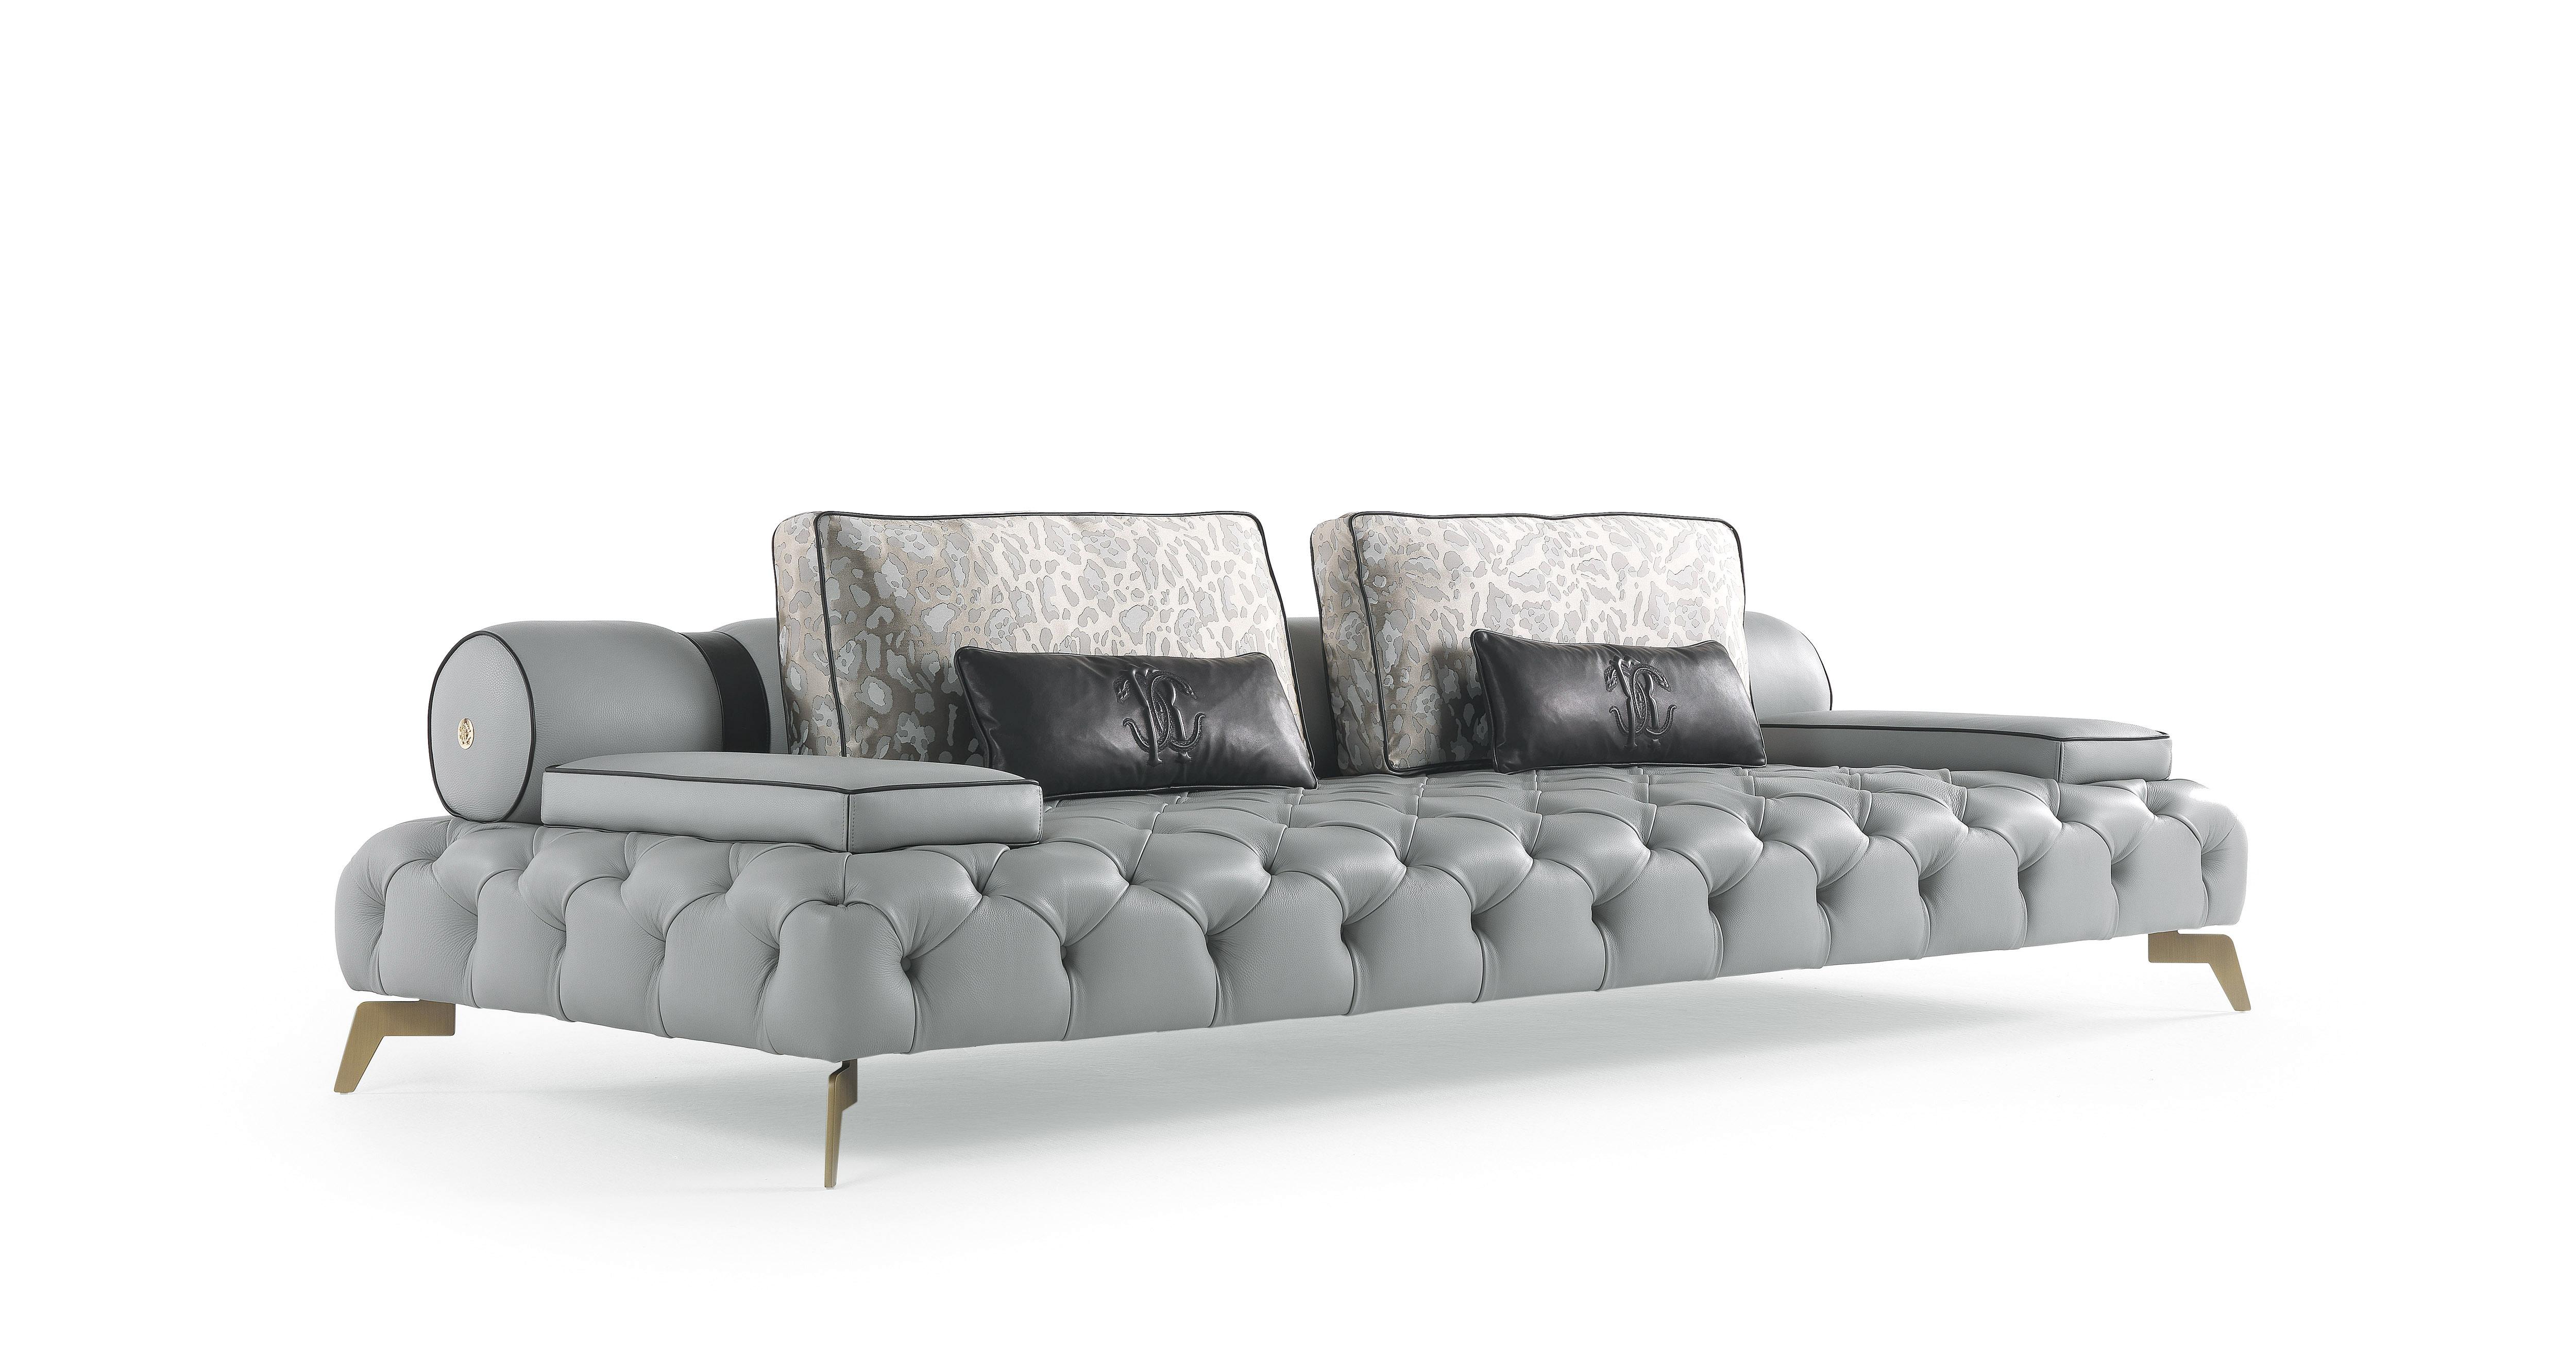 Darlington ist ein ikonisches Sofa der Roberto Cavalli Home Interiors Collection, das sich durch eine raffinierte Capitonné-Verarbeitung auszeichnet.
Darlington 3-Sitzer Sofa Struktur aus Pappelholz und Schaumstoff. Polsterung in Leder CAT. B Touch